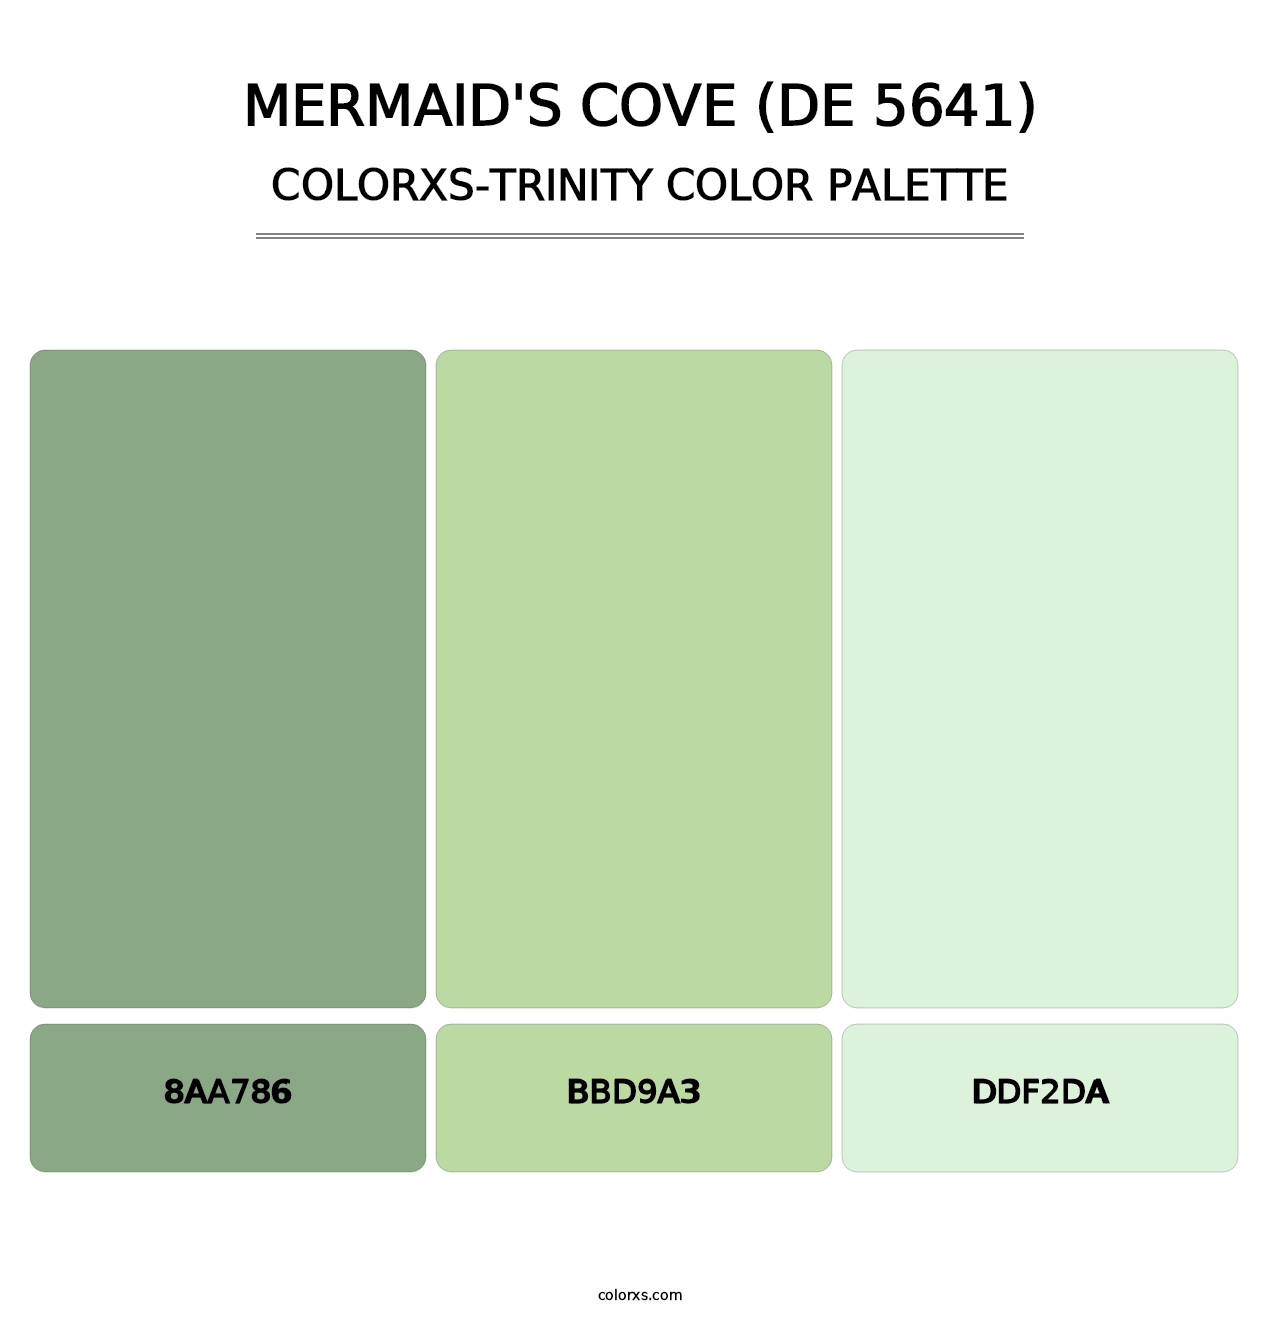 Mermaid's Cove (DE 5641) - Colorxs Trinity Palette